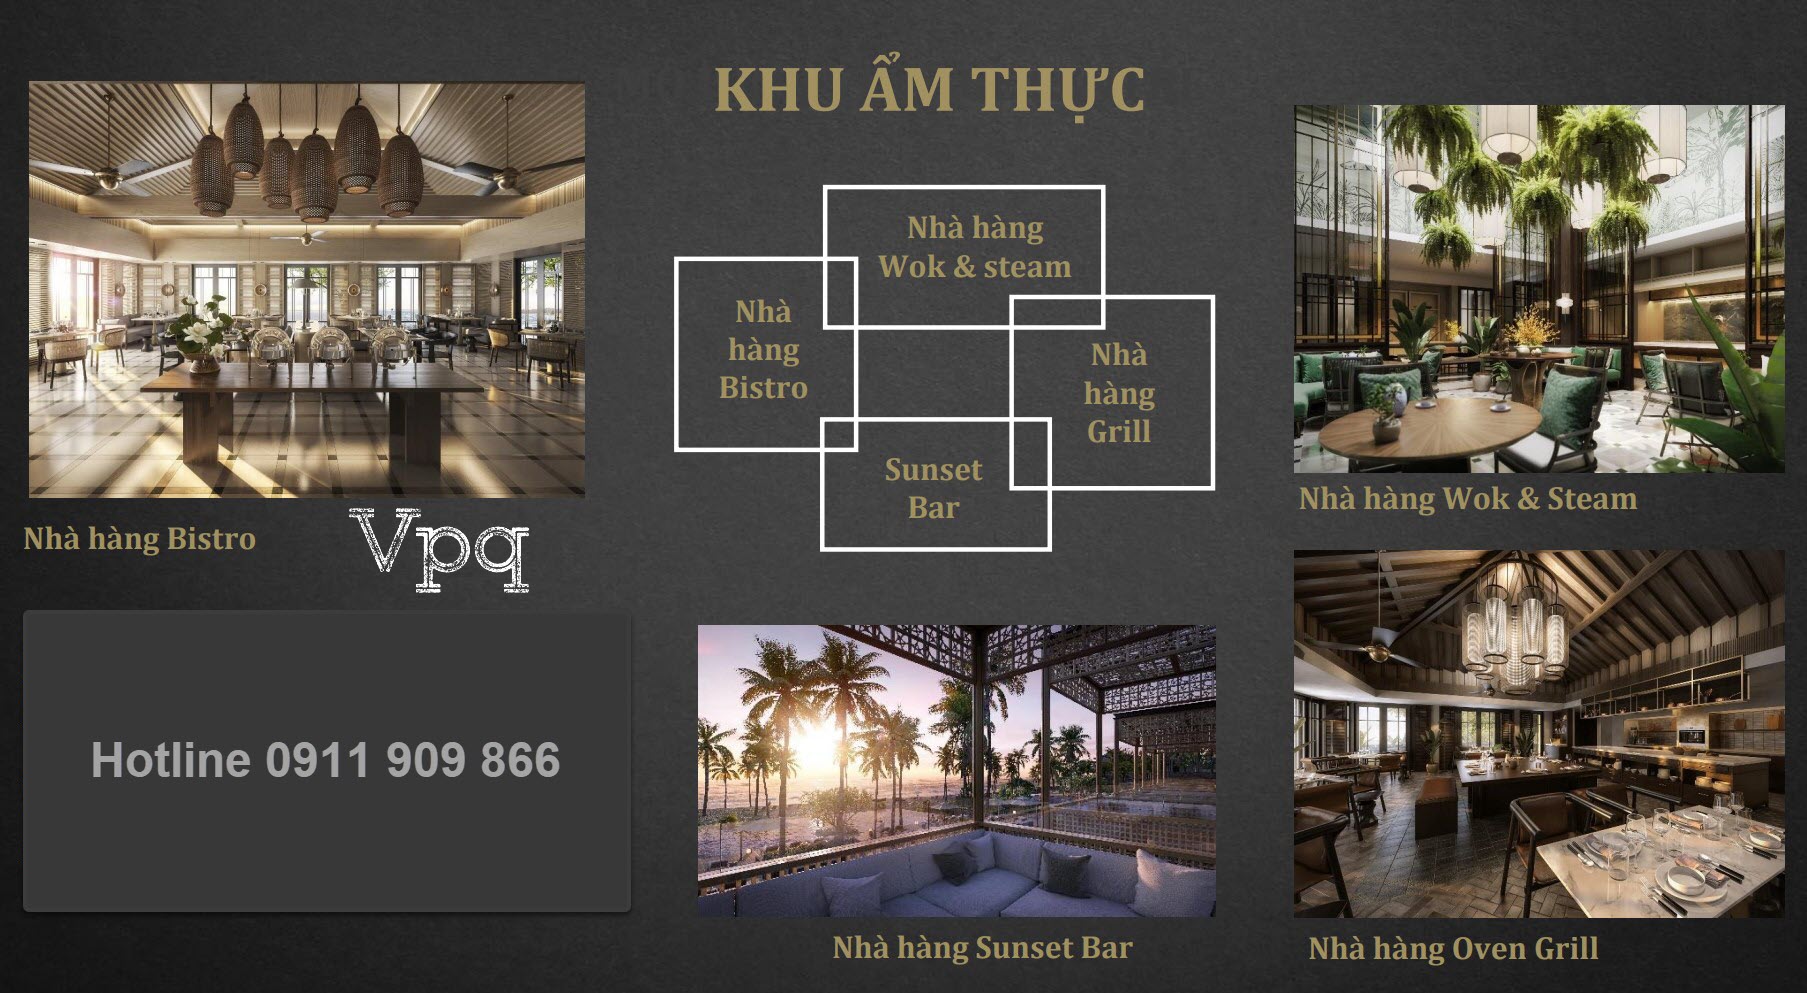 Khu ẩm thực Park Hyatt Phu Quoc Residences